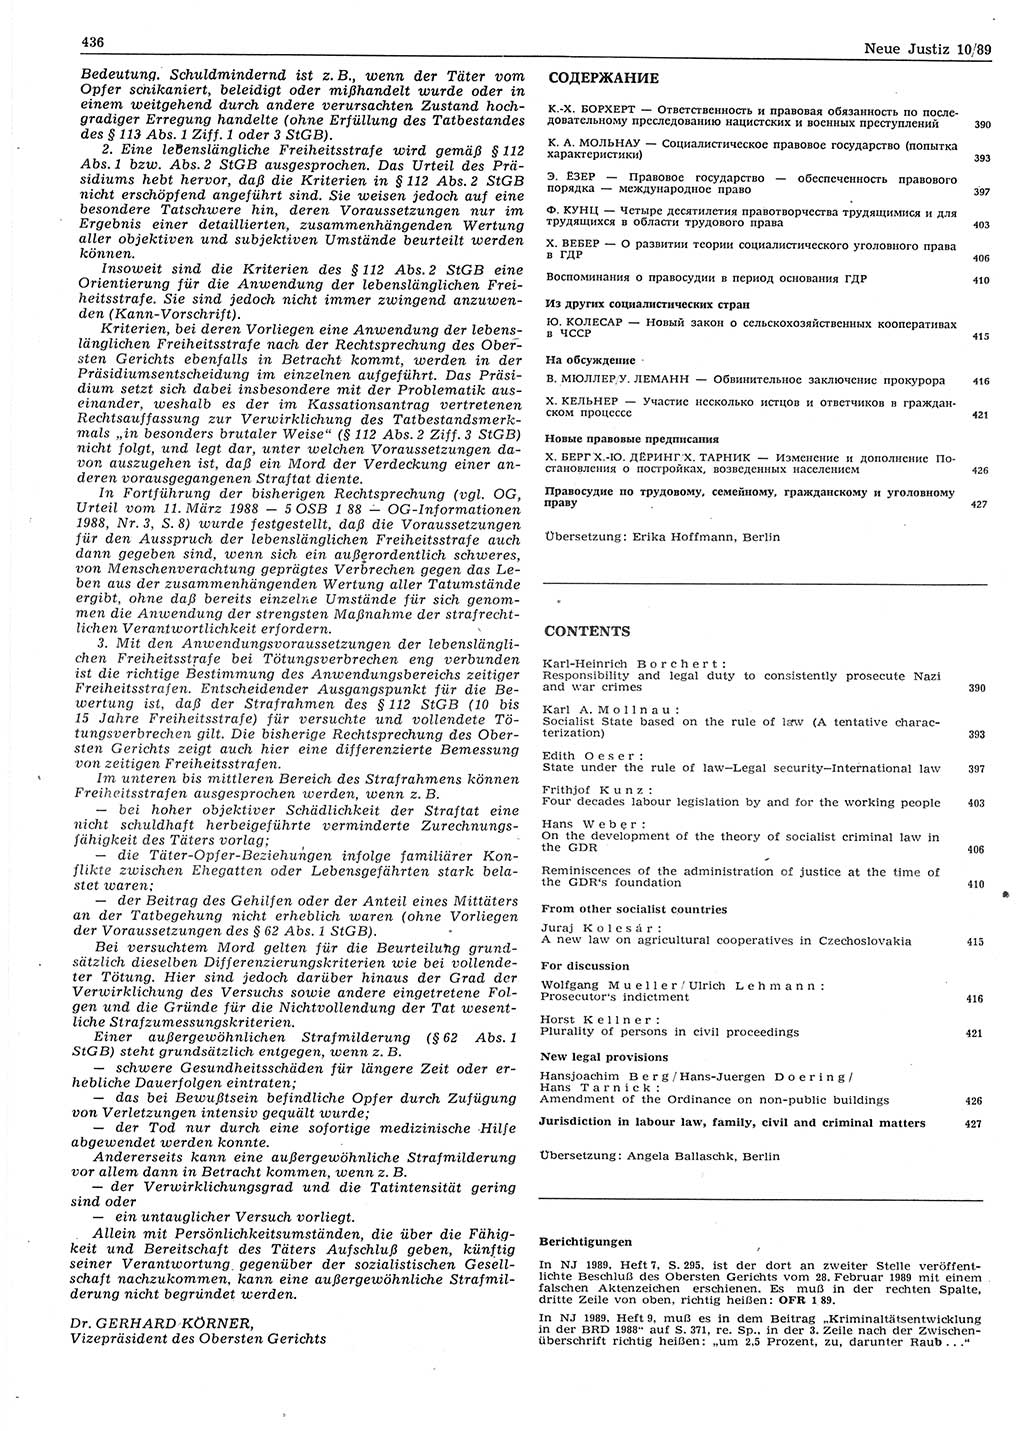 Neue Justiz (NJ), Zeitschrift für sozialistisches Recht und Gesetzlichkeit [Deutsche Demokratische Republik (DDR)], 43. Jahrgang 1989, Seite 436 (NJ DDR 1989, S. 436)